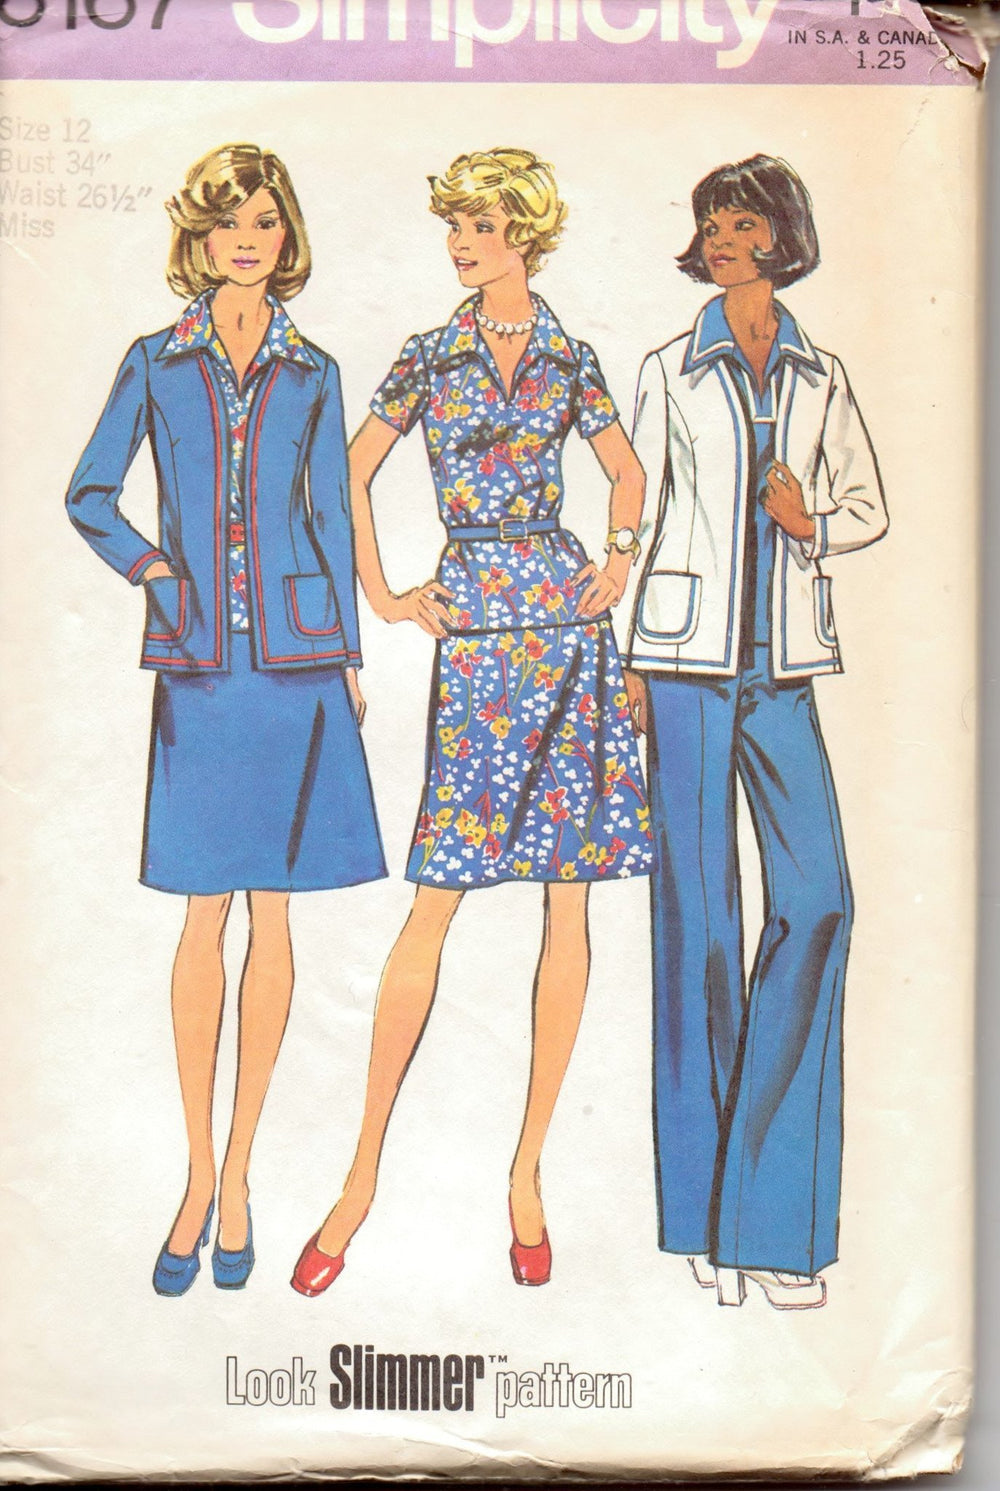 Simplicity 6167 Ladies Separates Wardrobe Jacket Top Skirt Pants Vintage 1970's Sewing Pattern - VintageStitching - Vintage Sewing Patterns